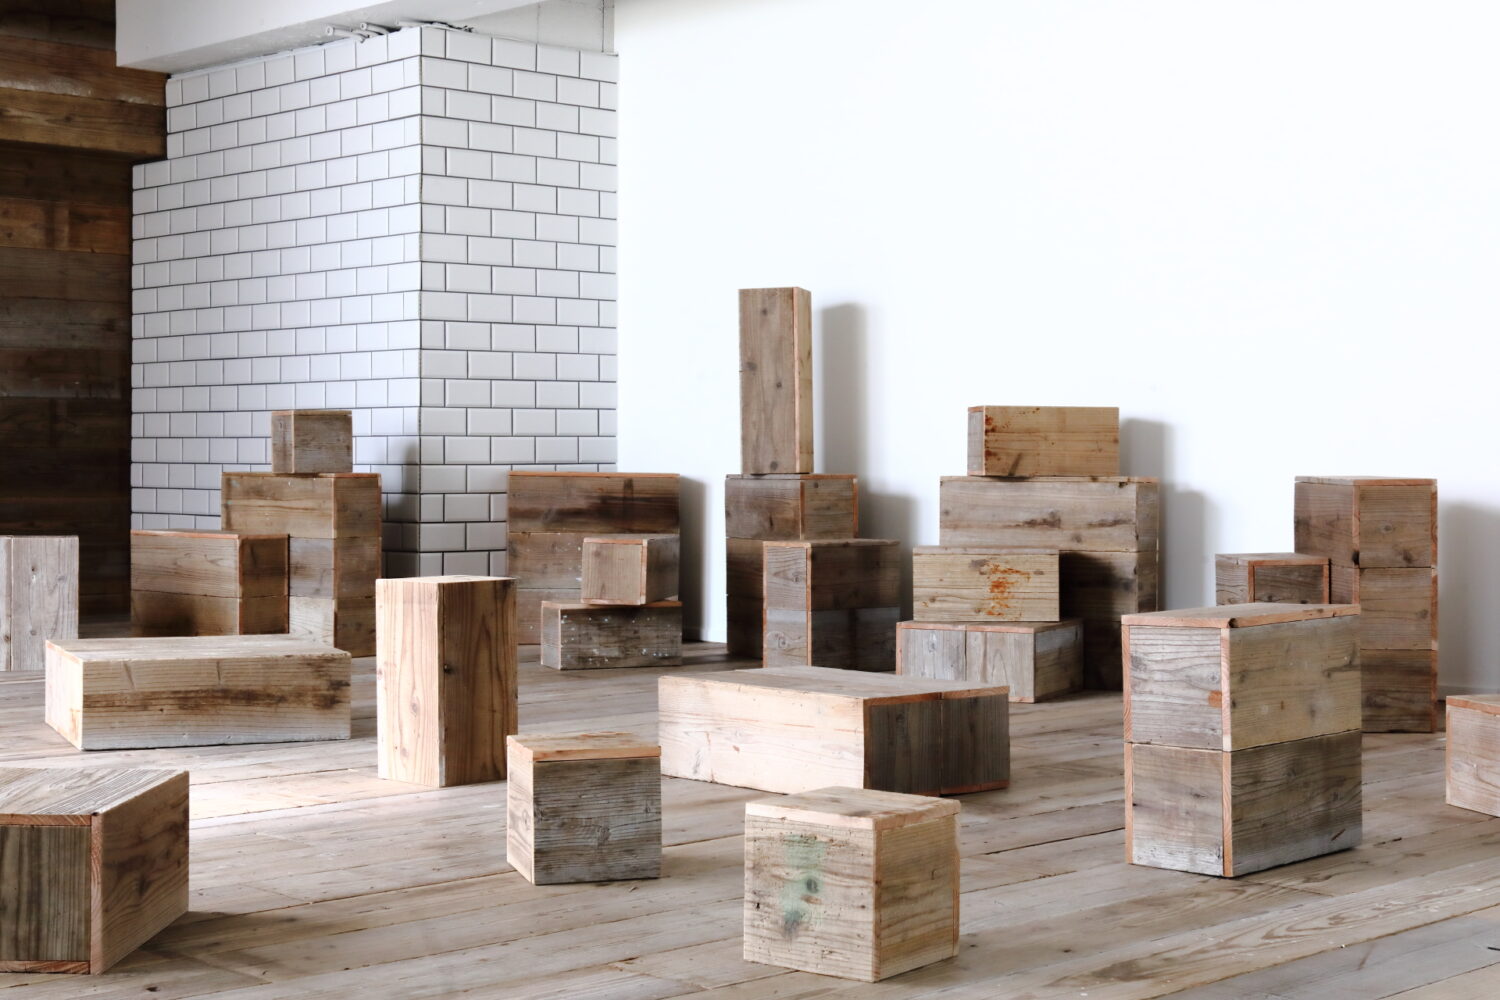 多数の木製キューブが配置された空間